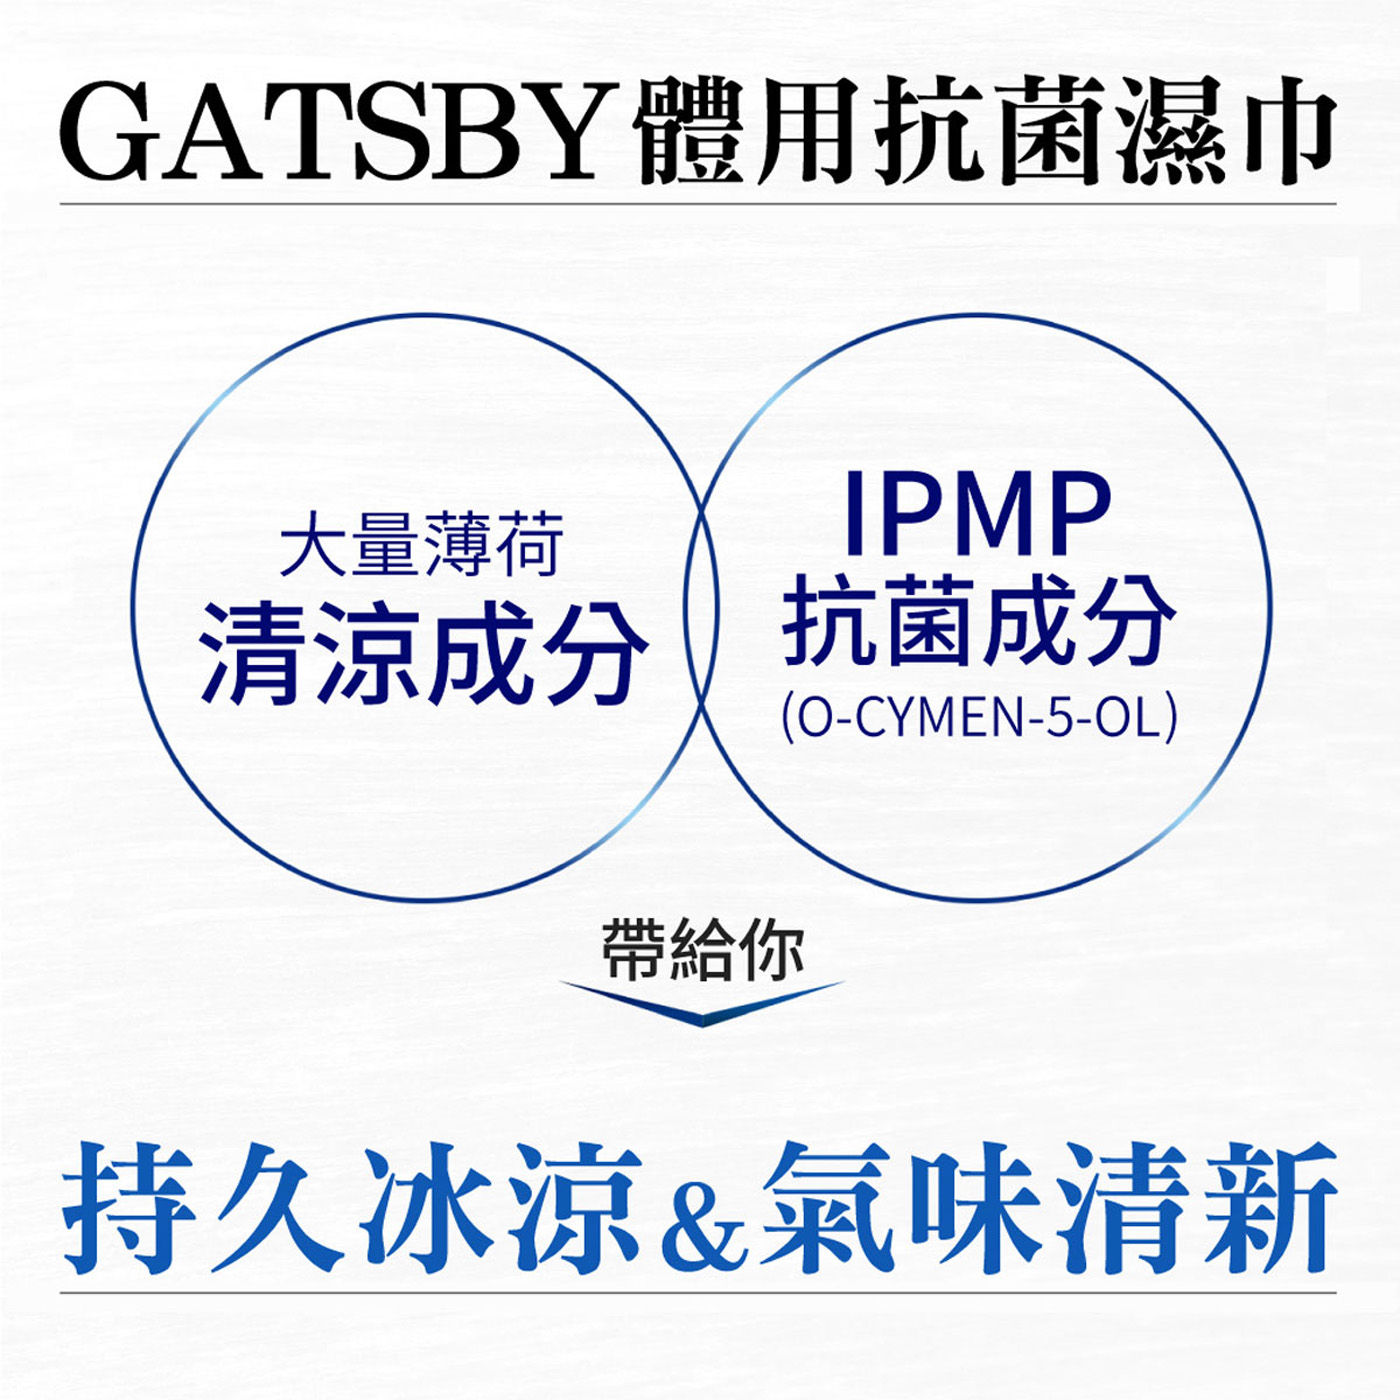 Gatsby 體用濕巾 大量薄荷清涼成分IPMP抗菌成份帶給你持久冰涼氣味清新